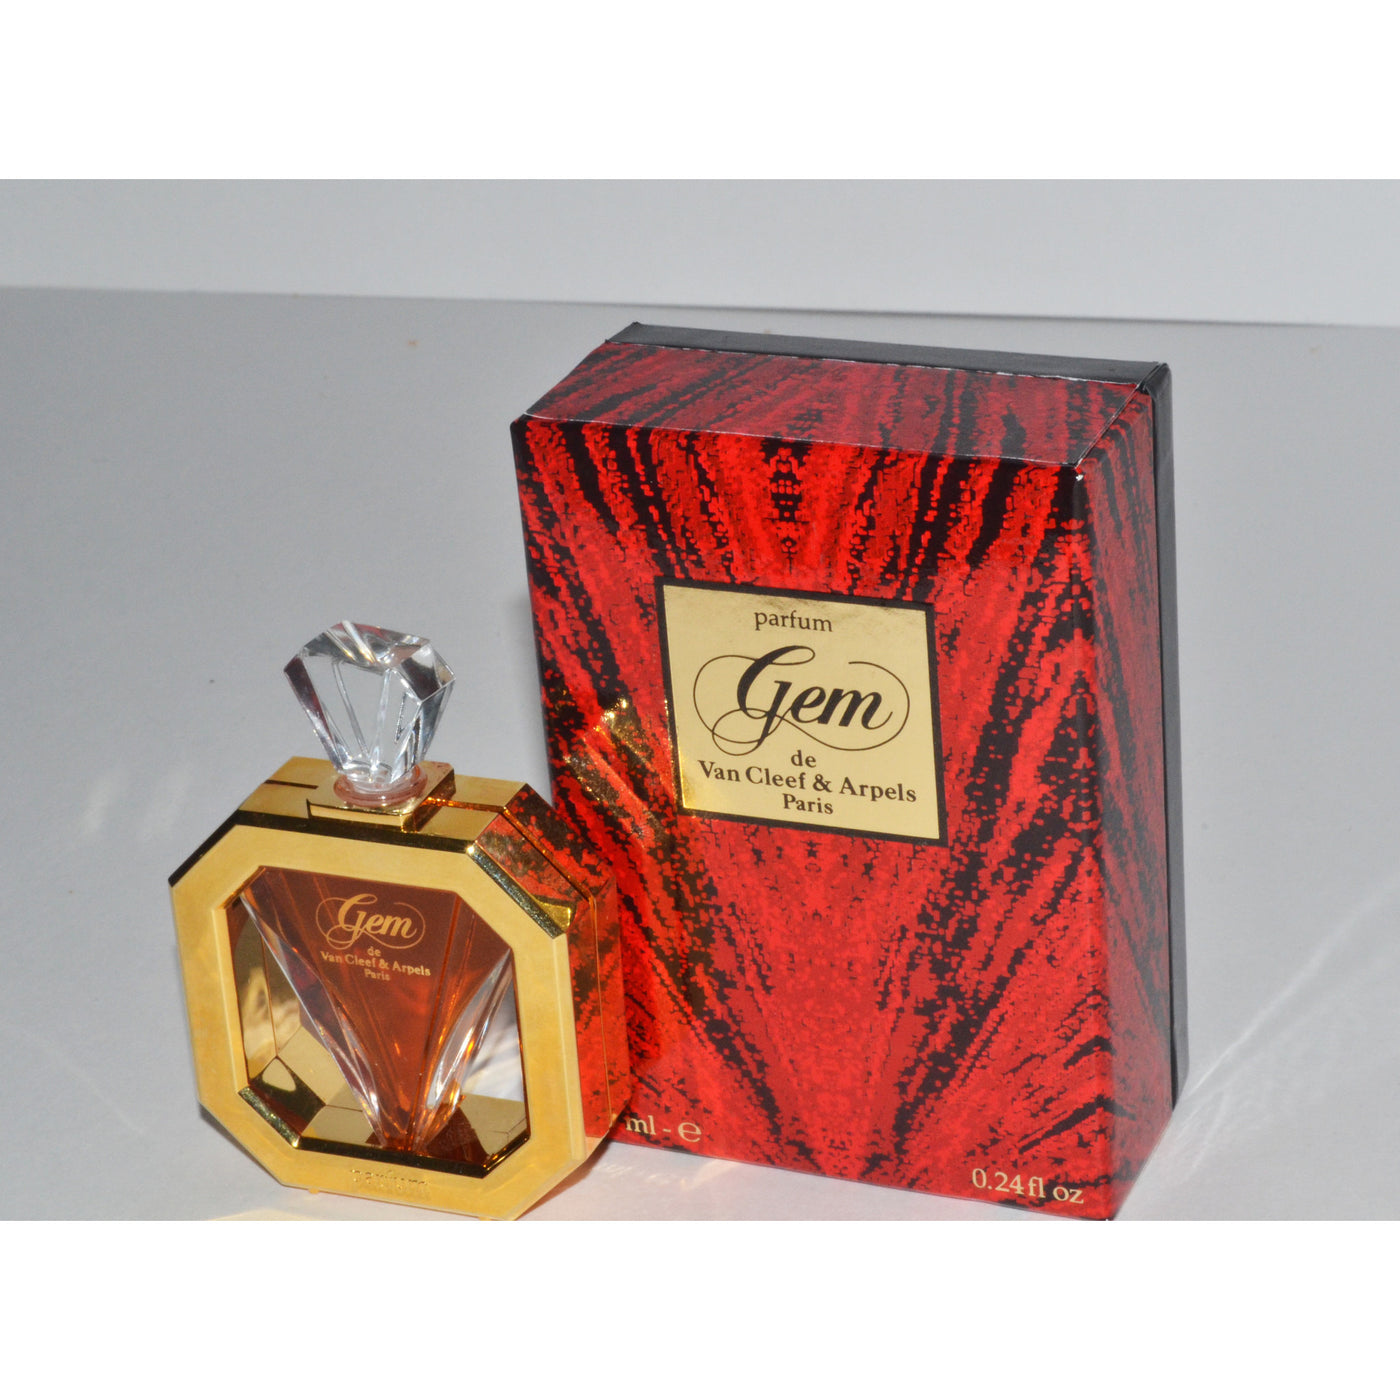 Vintage Gem Parfum By Van Cleef & Arpels